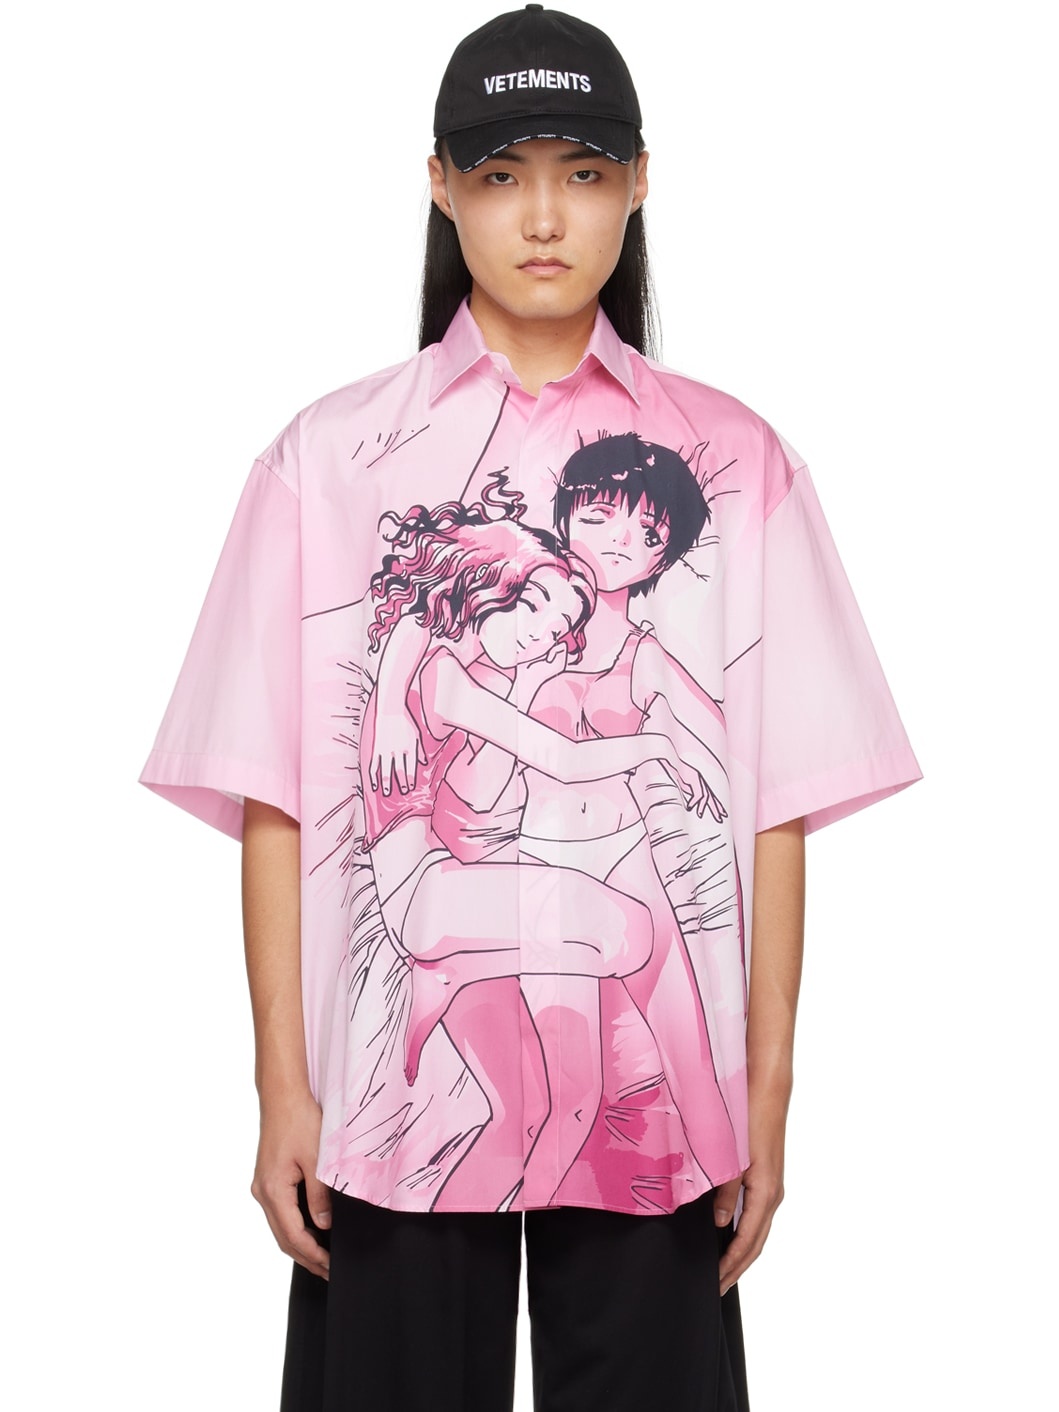 Pink Anime Shirt - 1